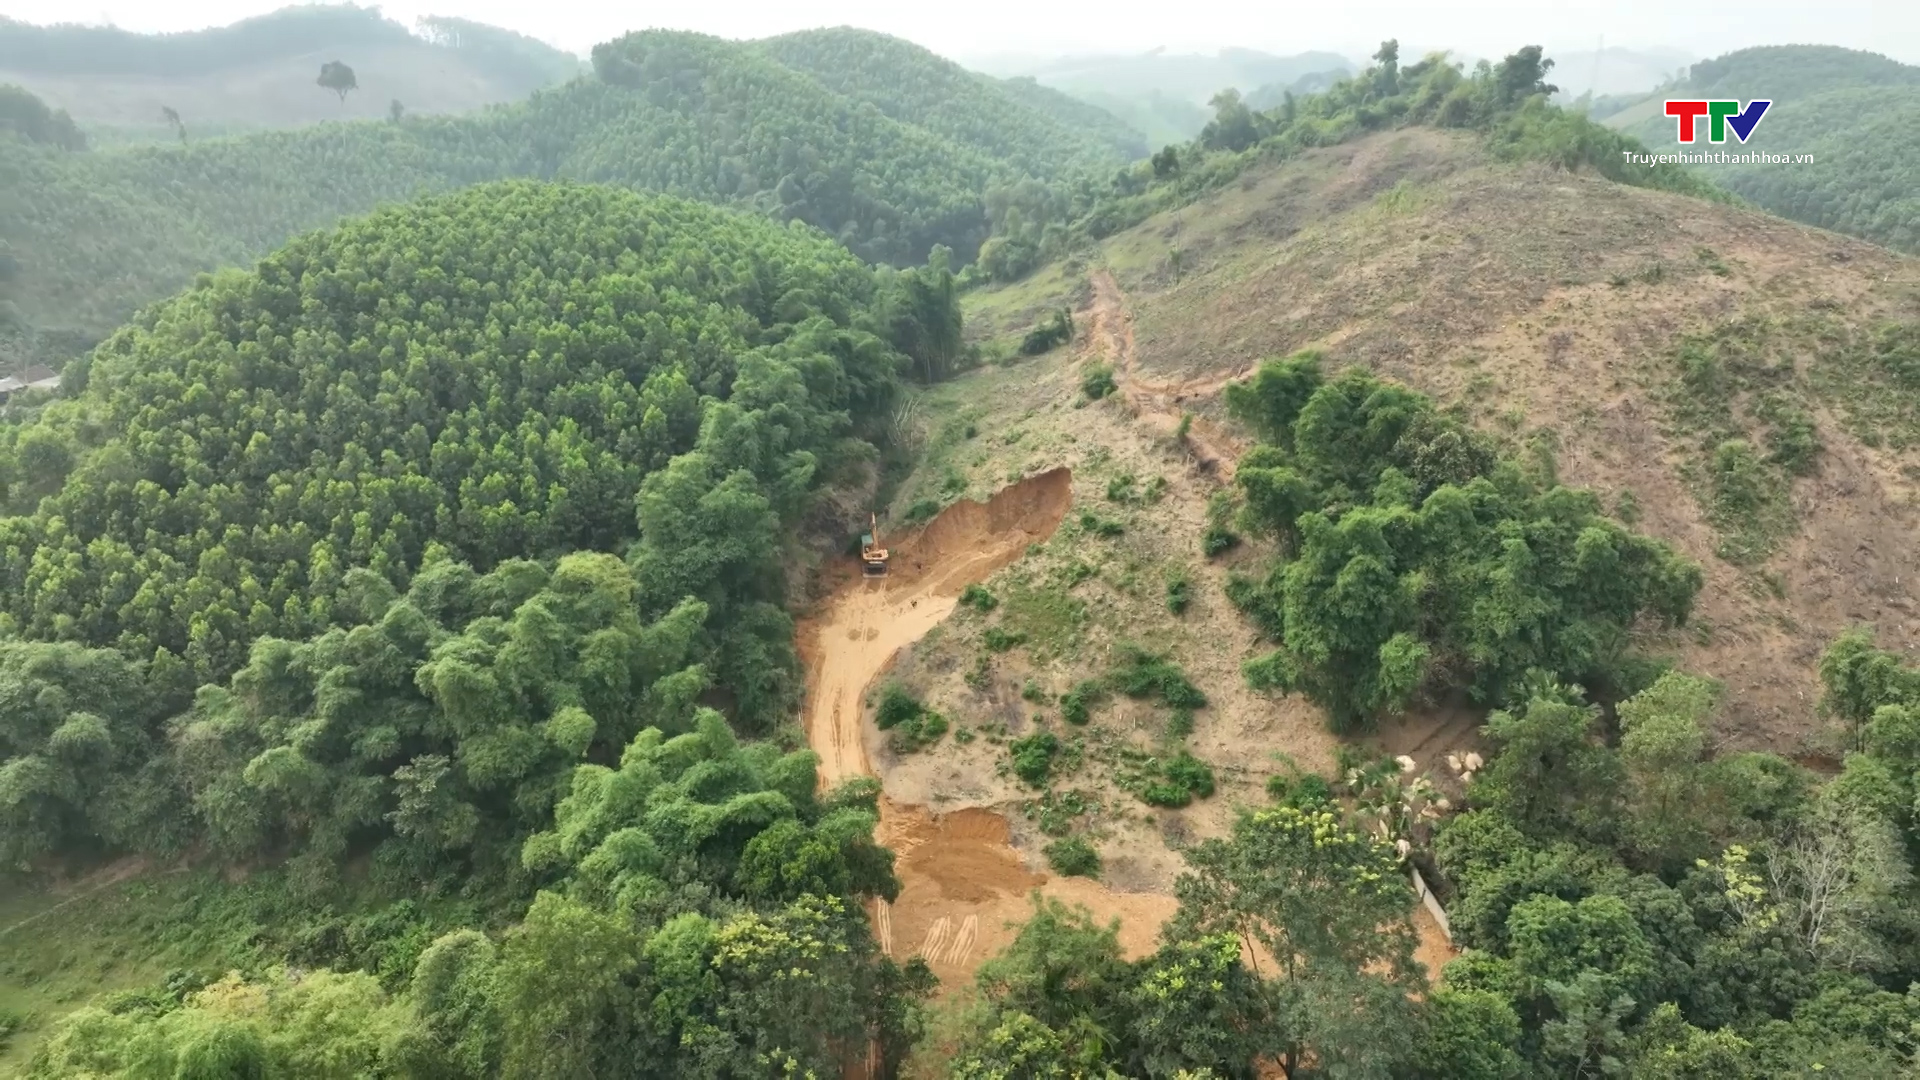 Chấn chỉnh tình trạng khai thác đất trái phép tại xã Xuân Cao, huyện Thường Xuân- Ảnh 1.